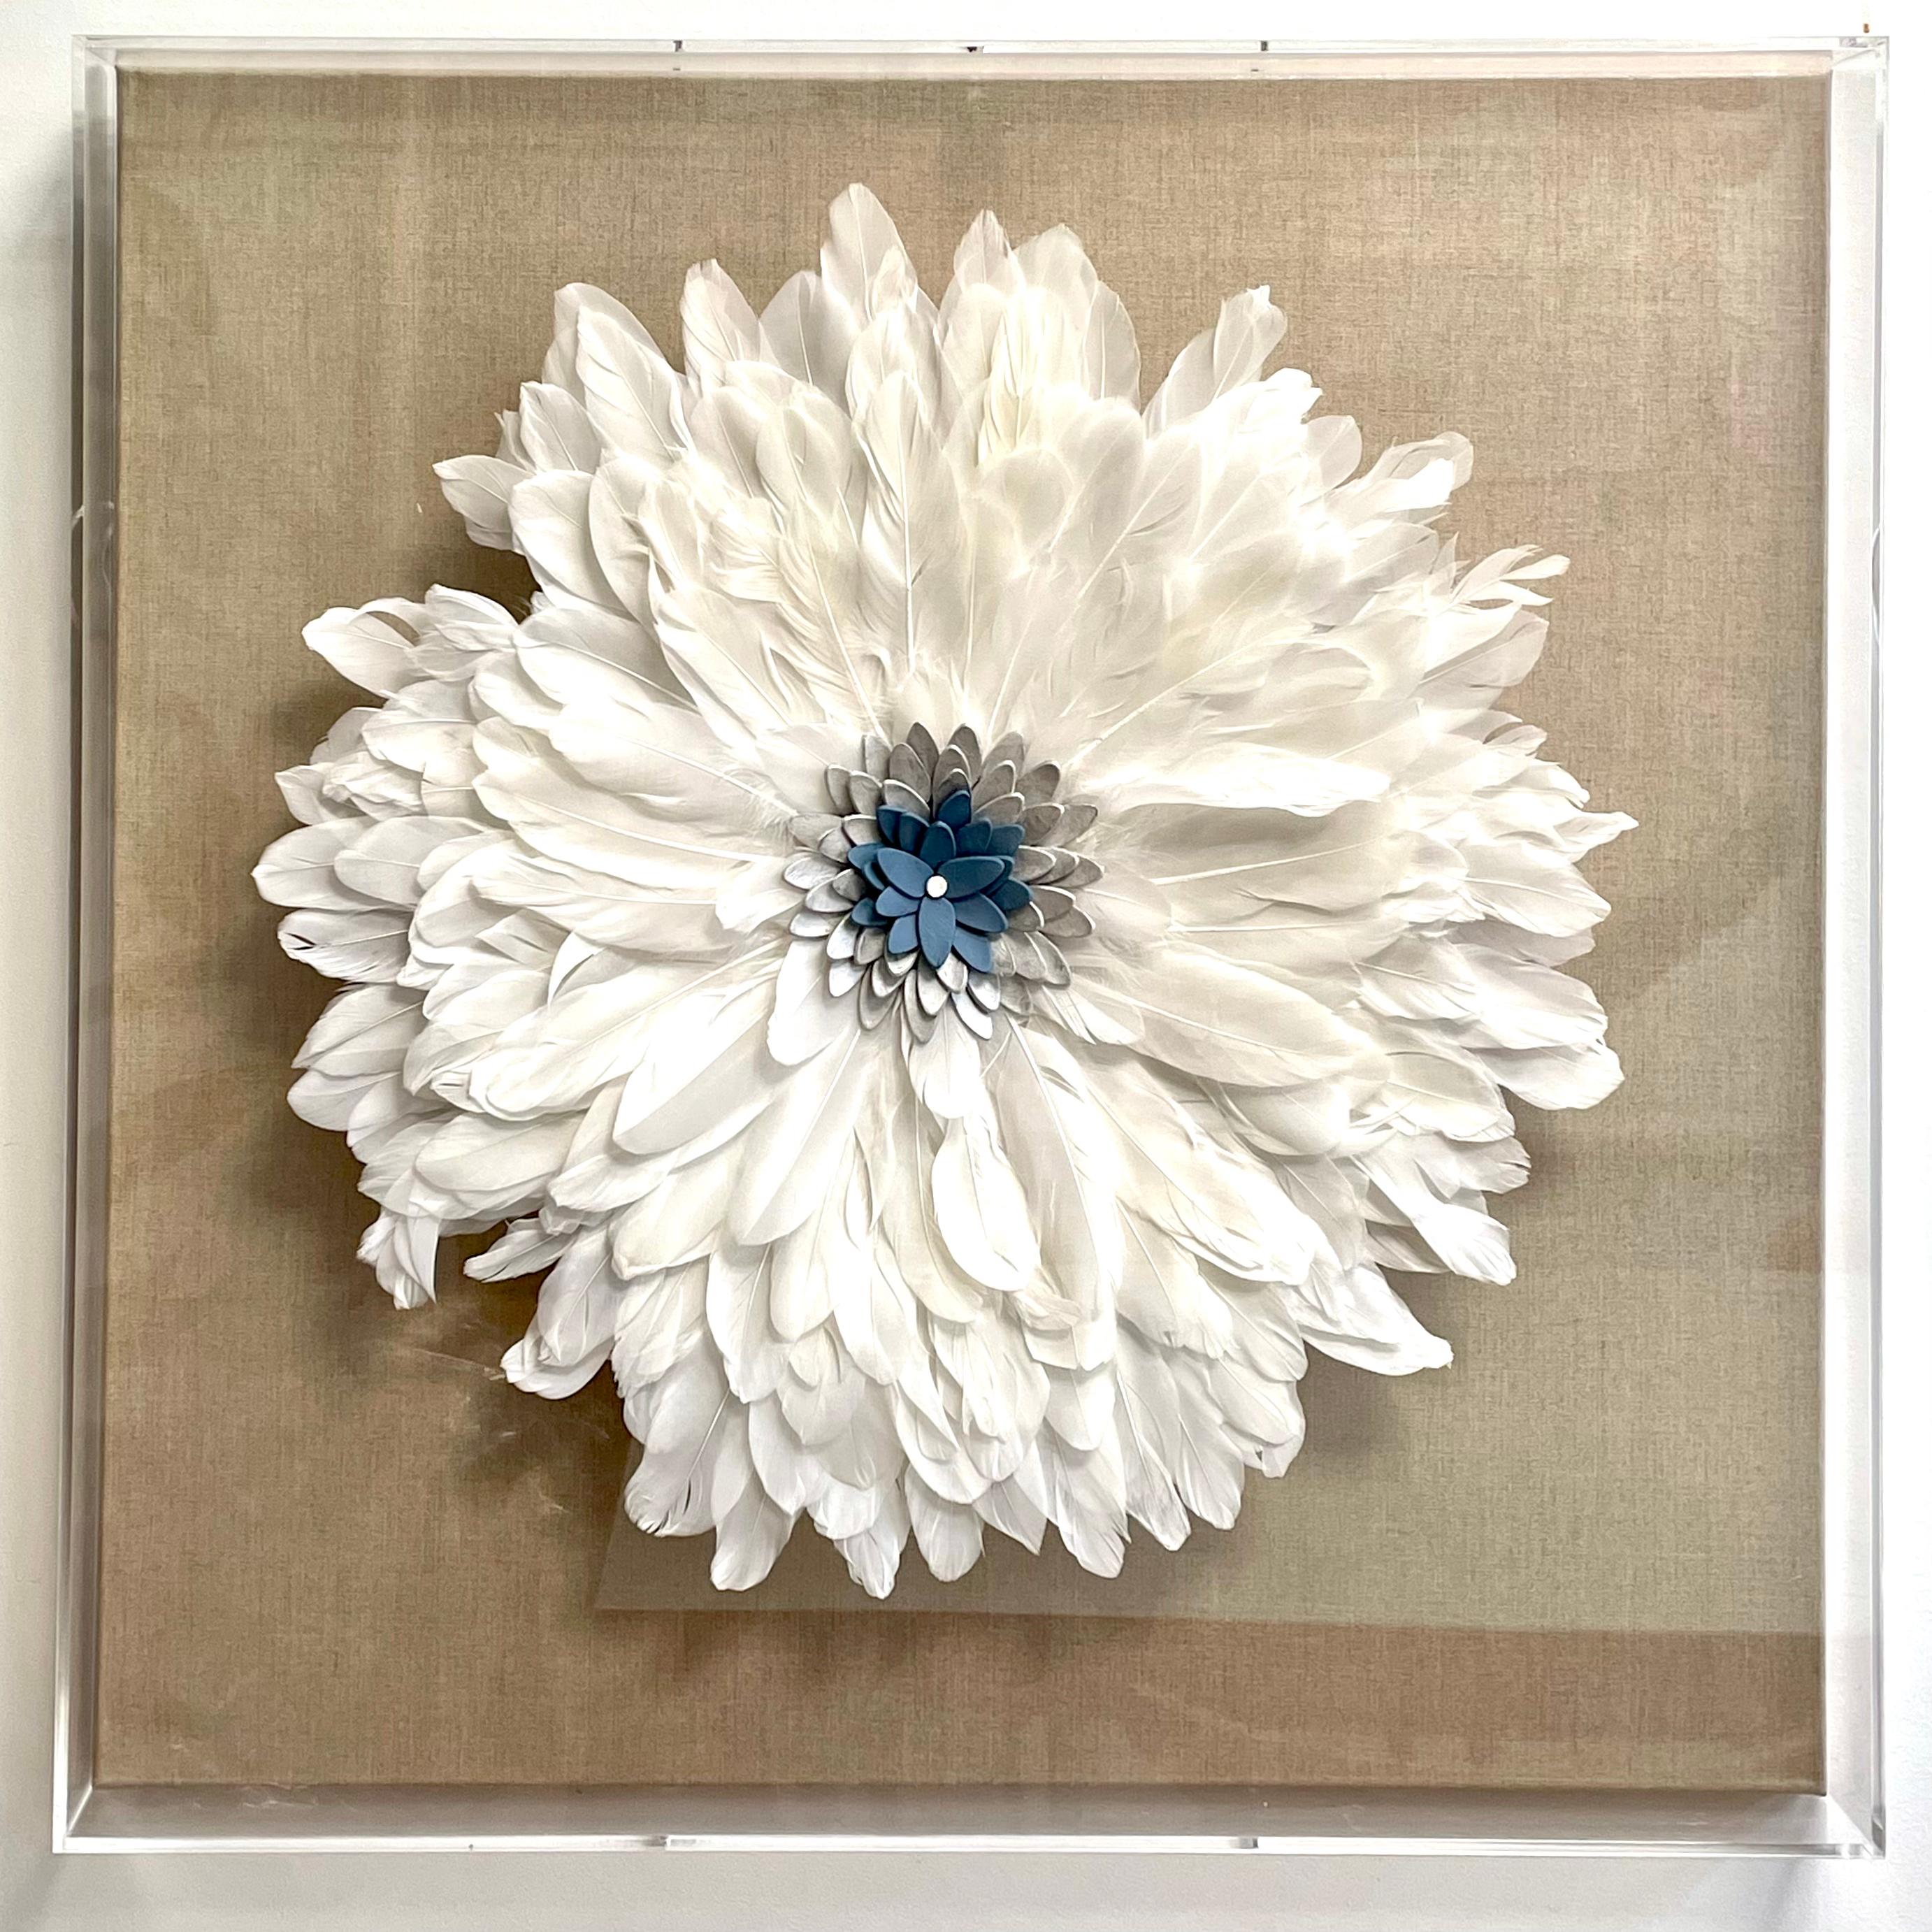 Feuille Flores 3D composition florale inspirée de la nature en forme de plume, argile dans une boîte en plexiglas - Contemporain Mixed Media Art par Marie Laforey